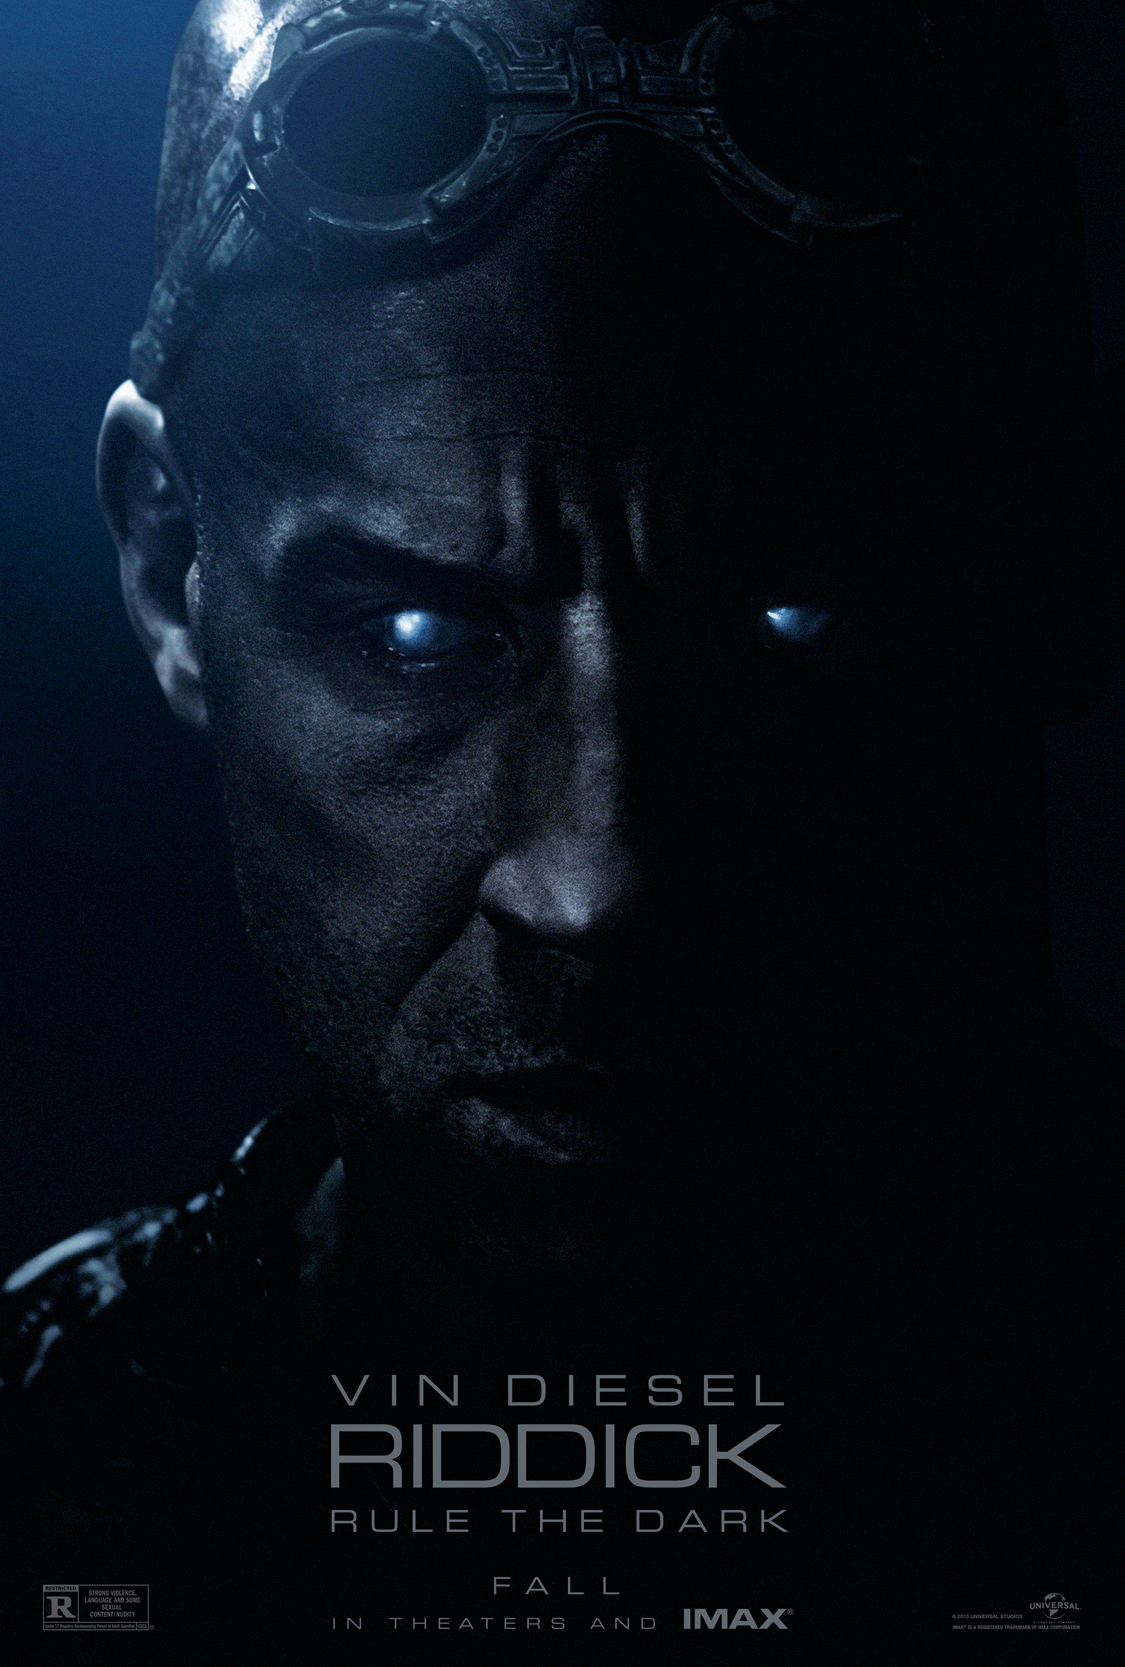 Riddick - Neuer Trailer und ein düsteres Poster1125 x 1667